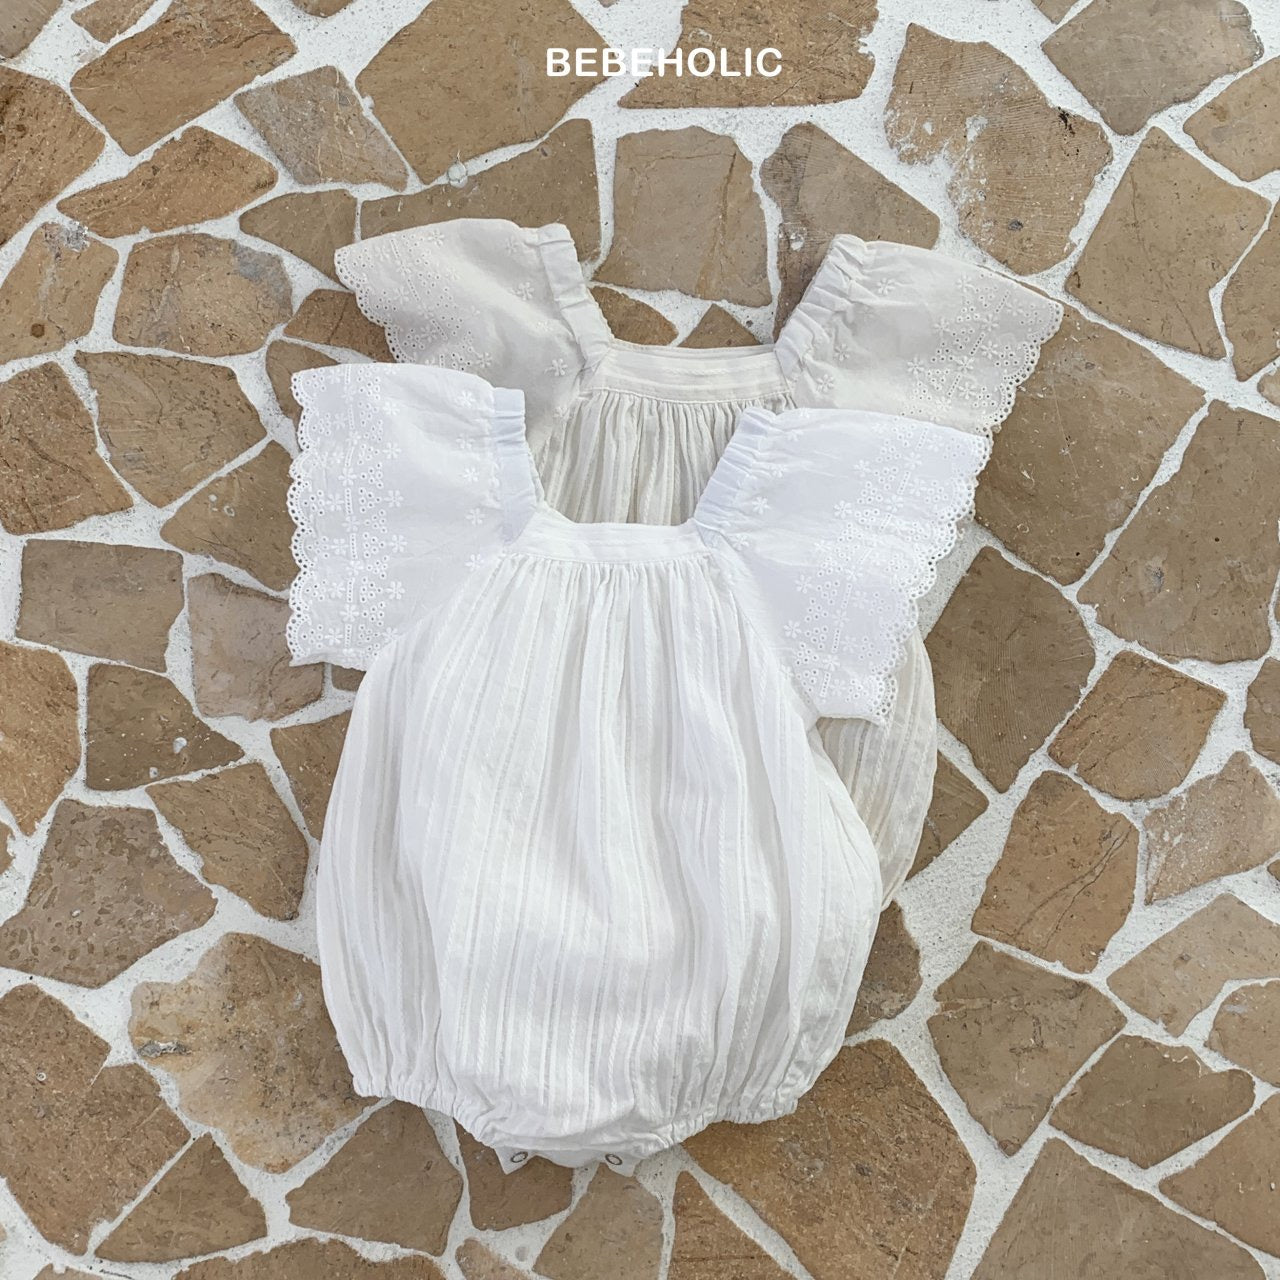 Weißes Babykleid von Bebe Holic mit Spitzendetails, flach auf einer geometrisch gemusterten Fliesenoberfläche. Das Kleidungsstück hat Puffärmel und ist für Kleinkinder konzipiert.